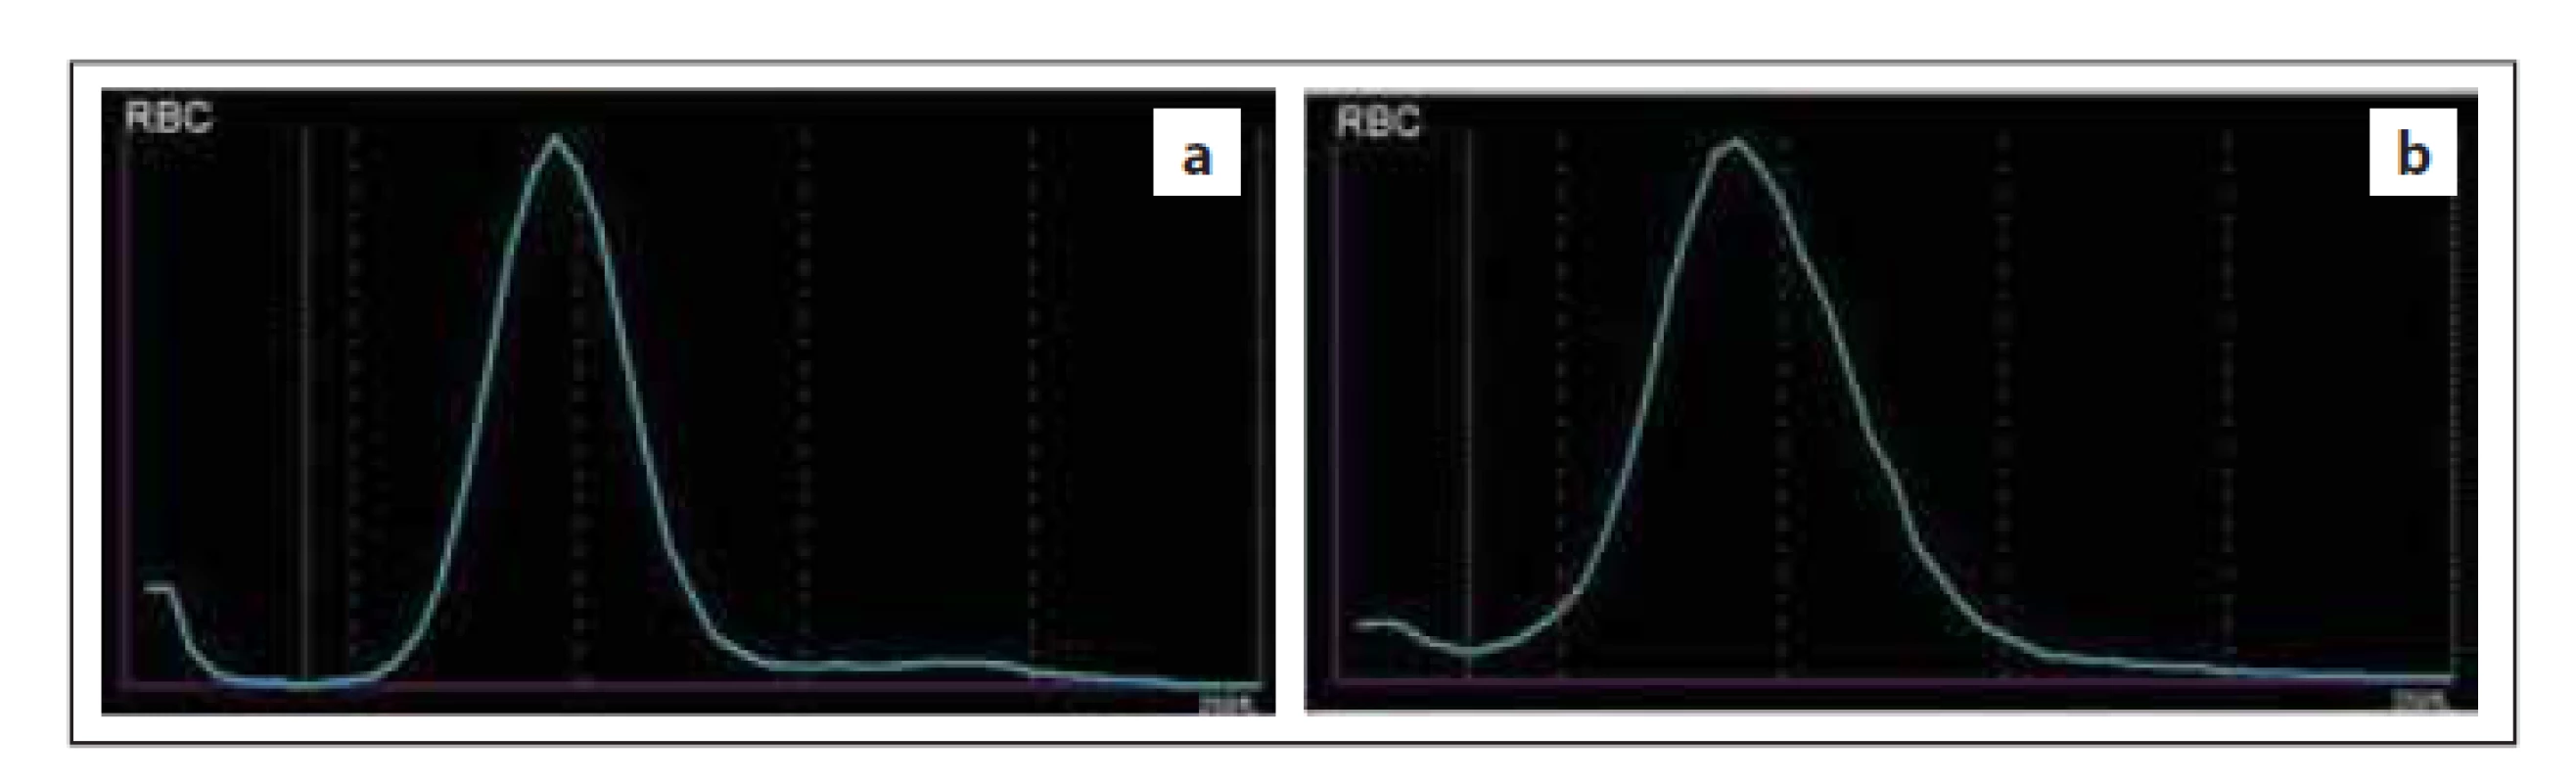 Normální průběh distribuční křivky RBC – (a) normální šíře distribuční
křivky (RDW), (b) vyšší šíře distribuční křivky (RDW) způsobená anizocytózou
erytrocytů (zdroj: laboratoř IV. IHK).<br>
RBC – erytrocyty, RDW – šíře distribuce erytrocytů